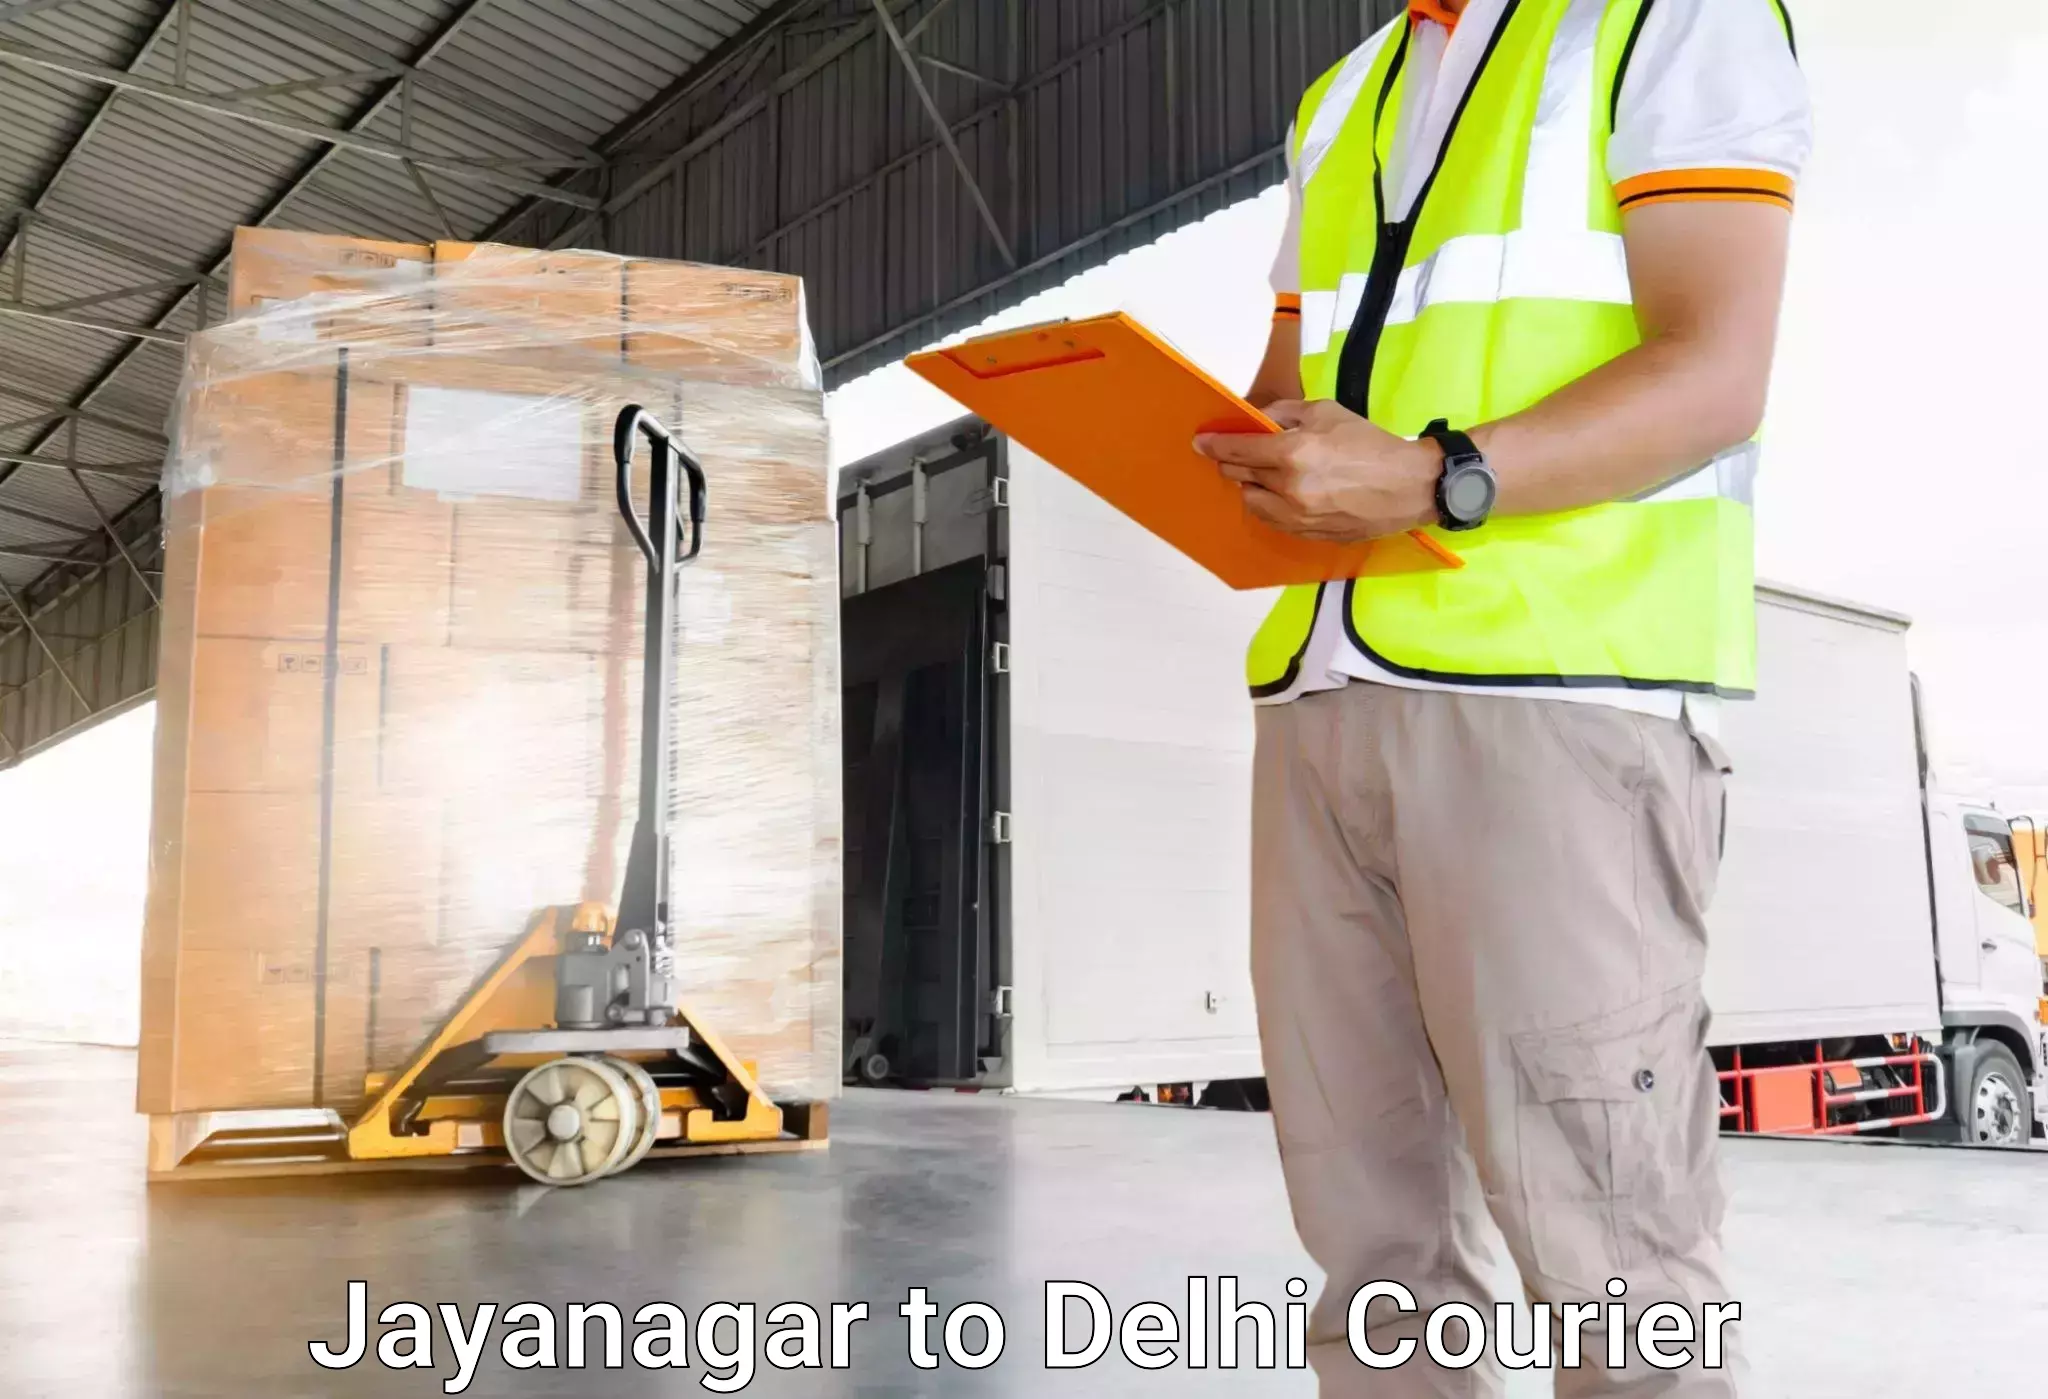 Urgent luggage shipment Jayanagar to IIT Delhi